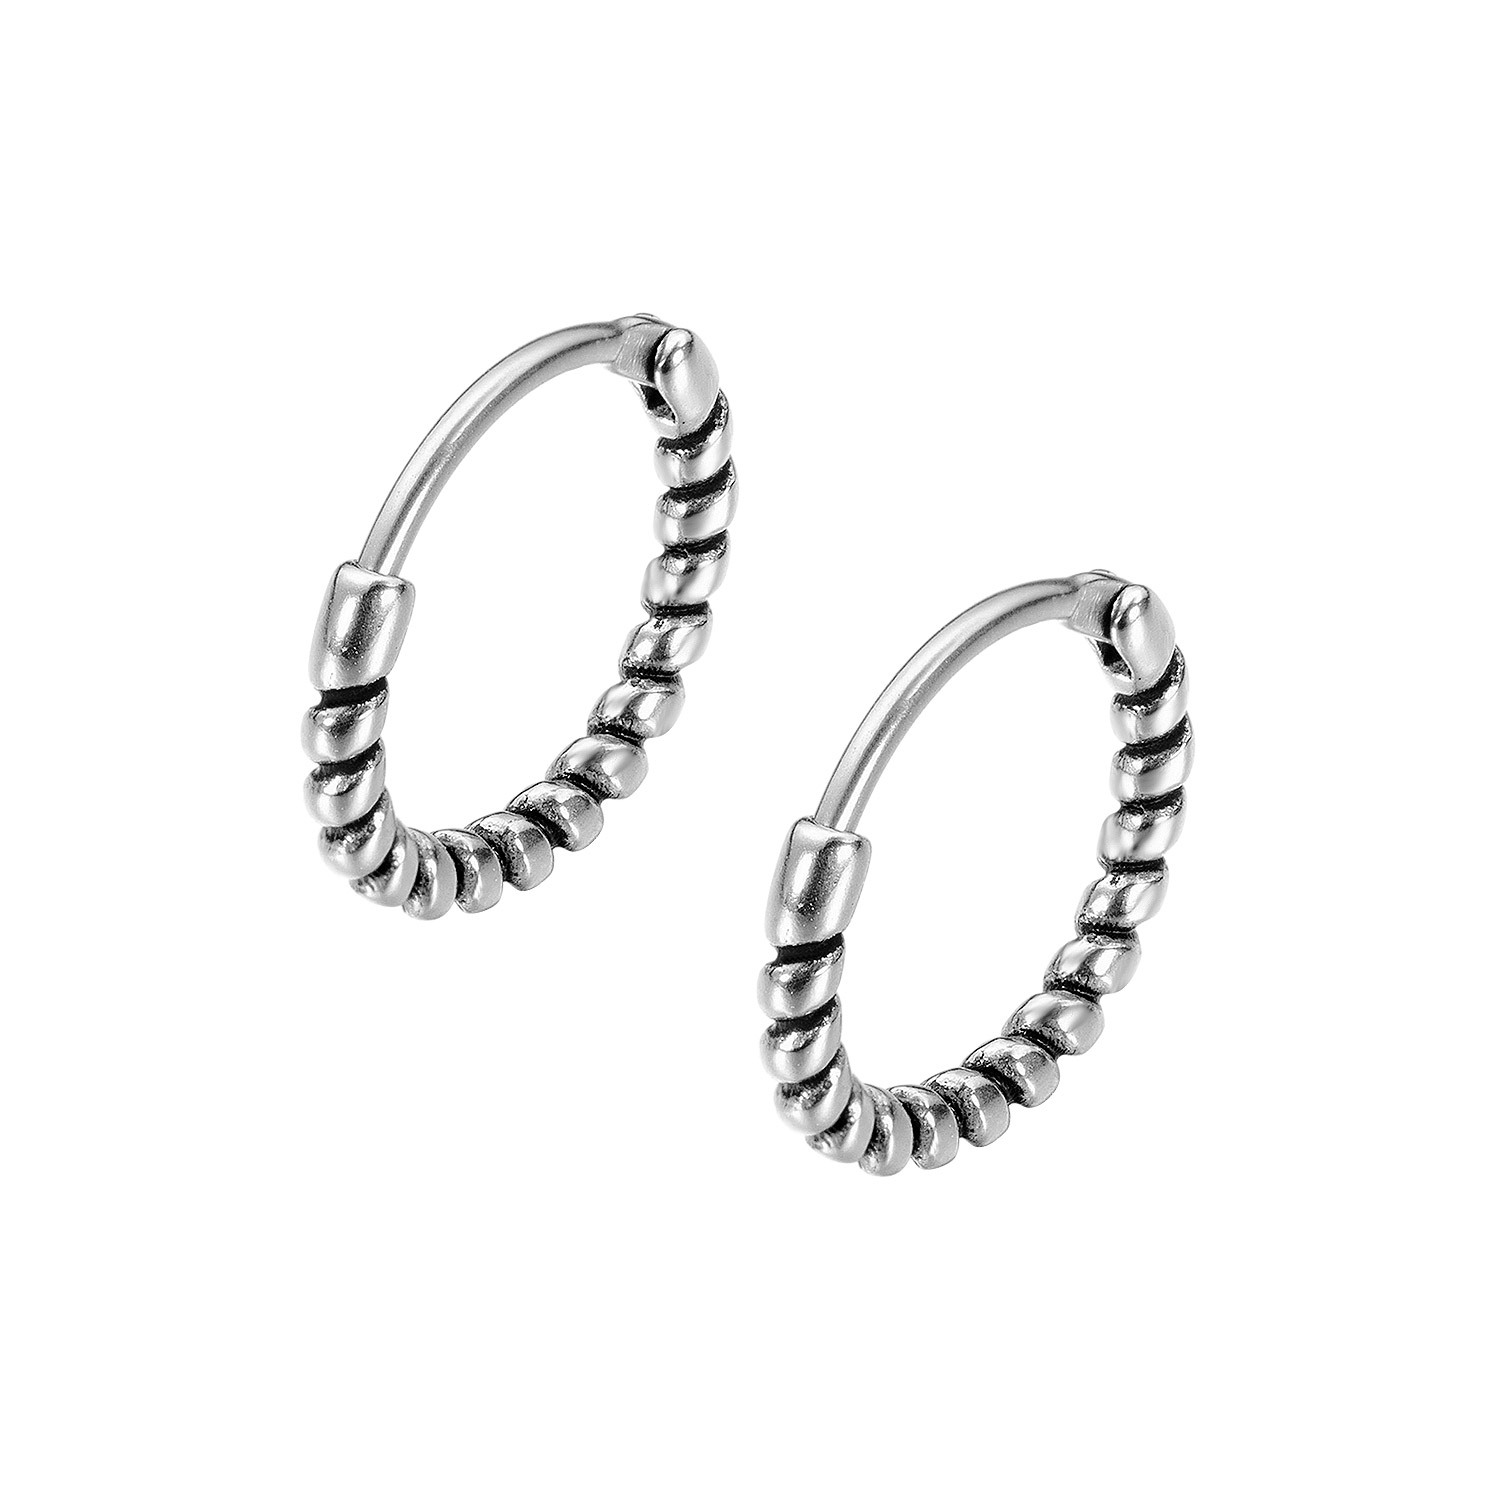 AliExpress hot new retro wrap-free men's titanium steel earrings earrings wild geometry ear rolls wholesale